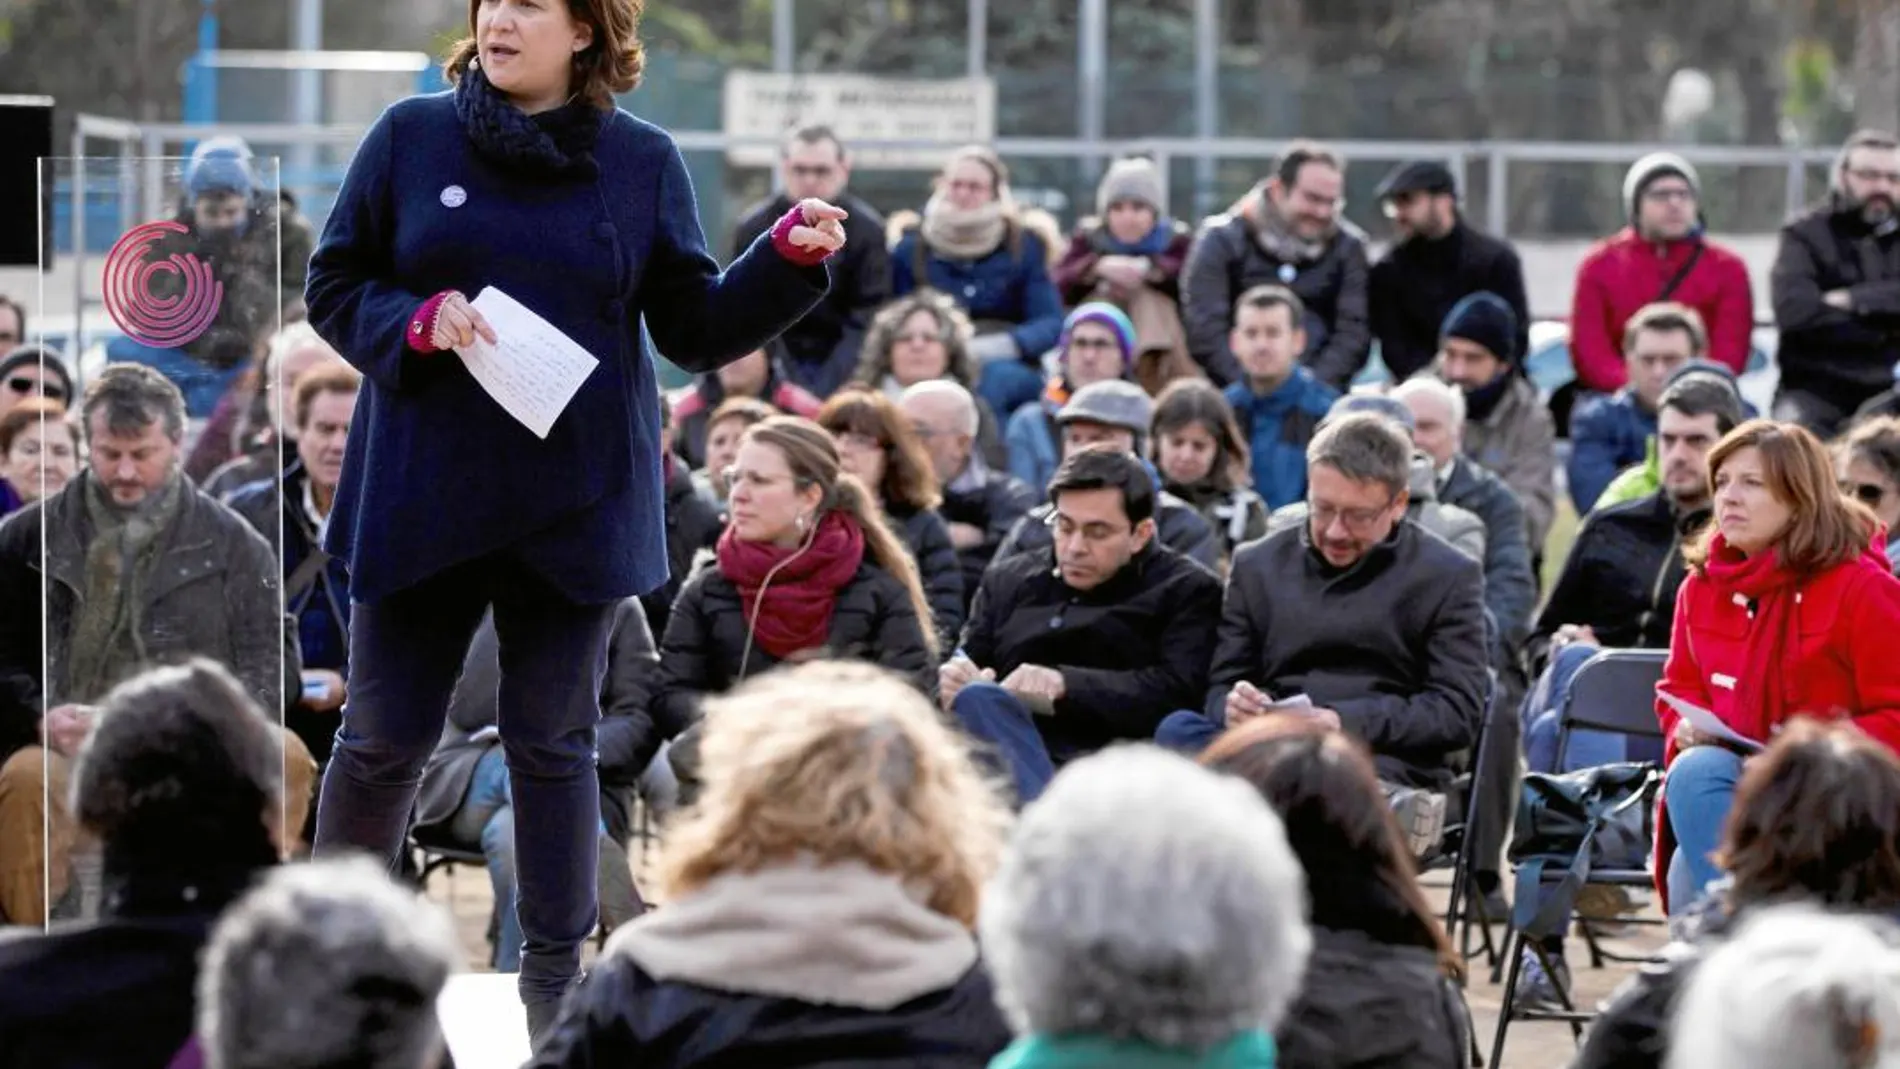 La alcaldesa de Barcelona, Ada Colau, partició ayer en un acto junto a otros miembros la formación